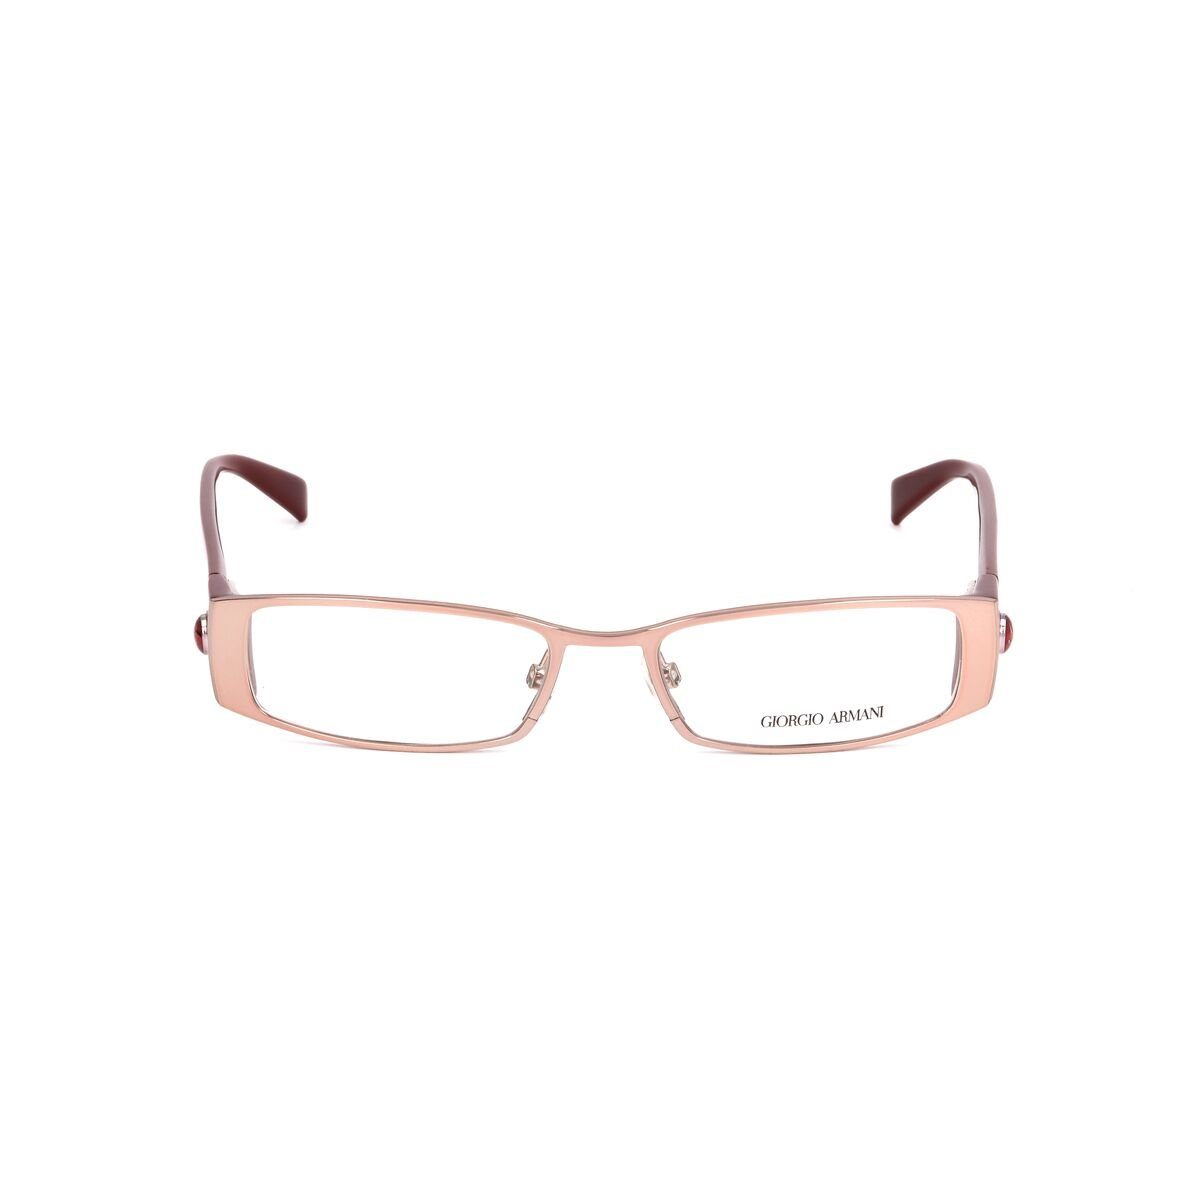 GA-641-NVS Brillenfassung Armani Giorgio Armani Sehstärke Brillengestell ohne Brille Gold Brillenges